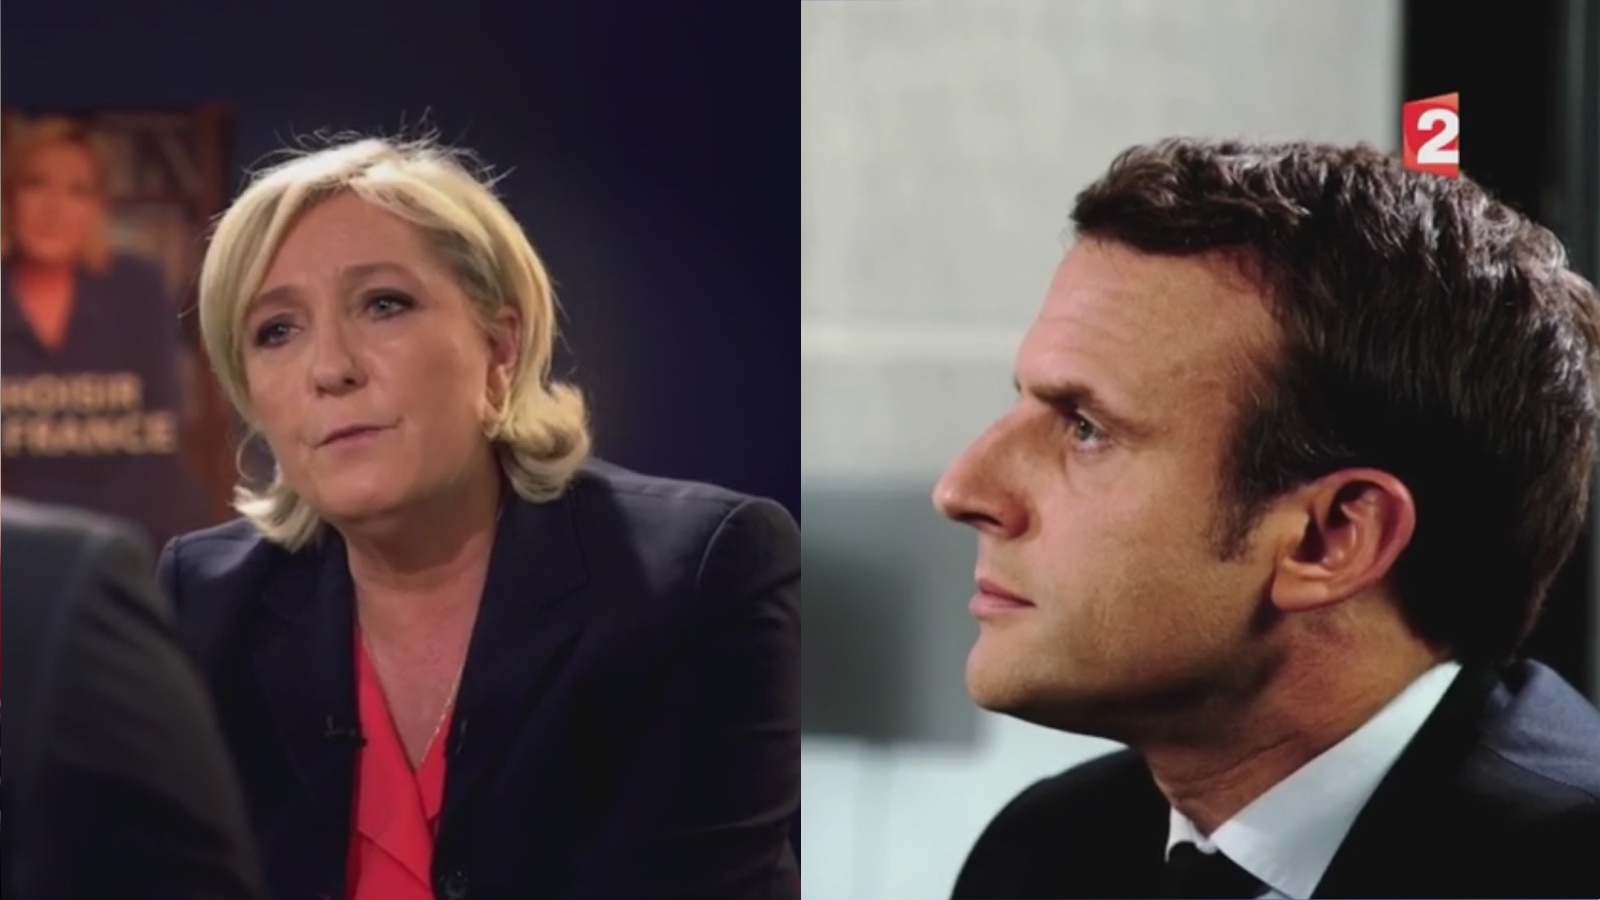 L'écart entre Emmanuel Macron et Marine Le Pen se resserre